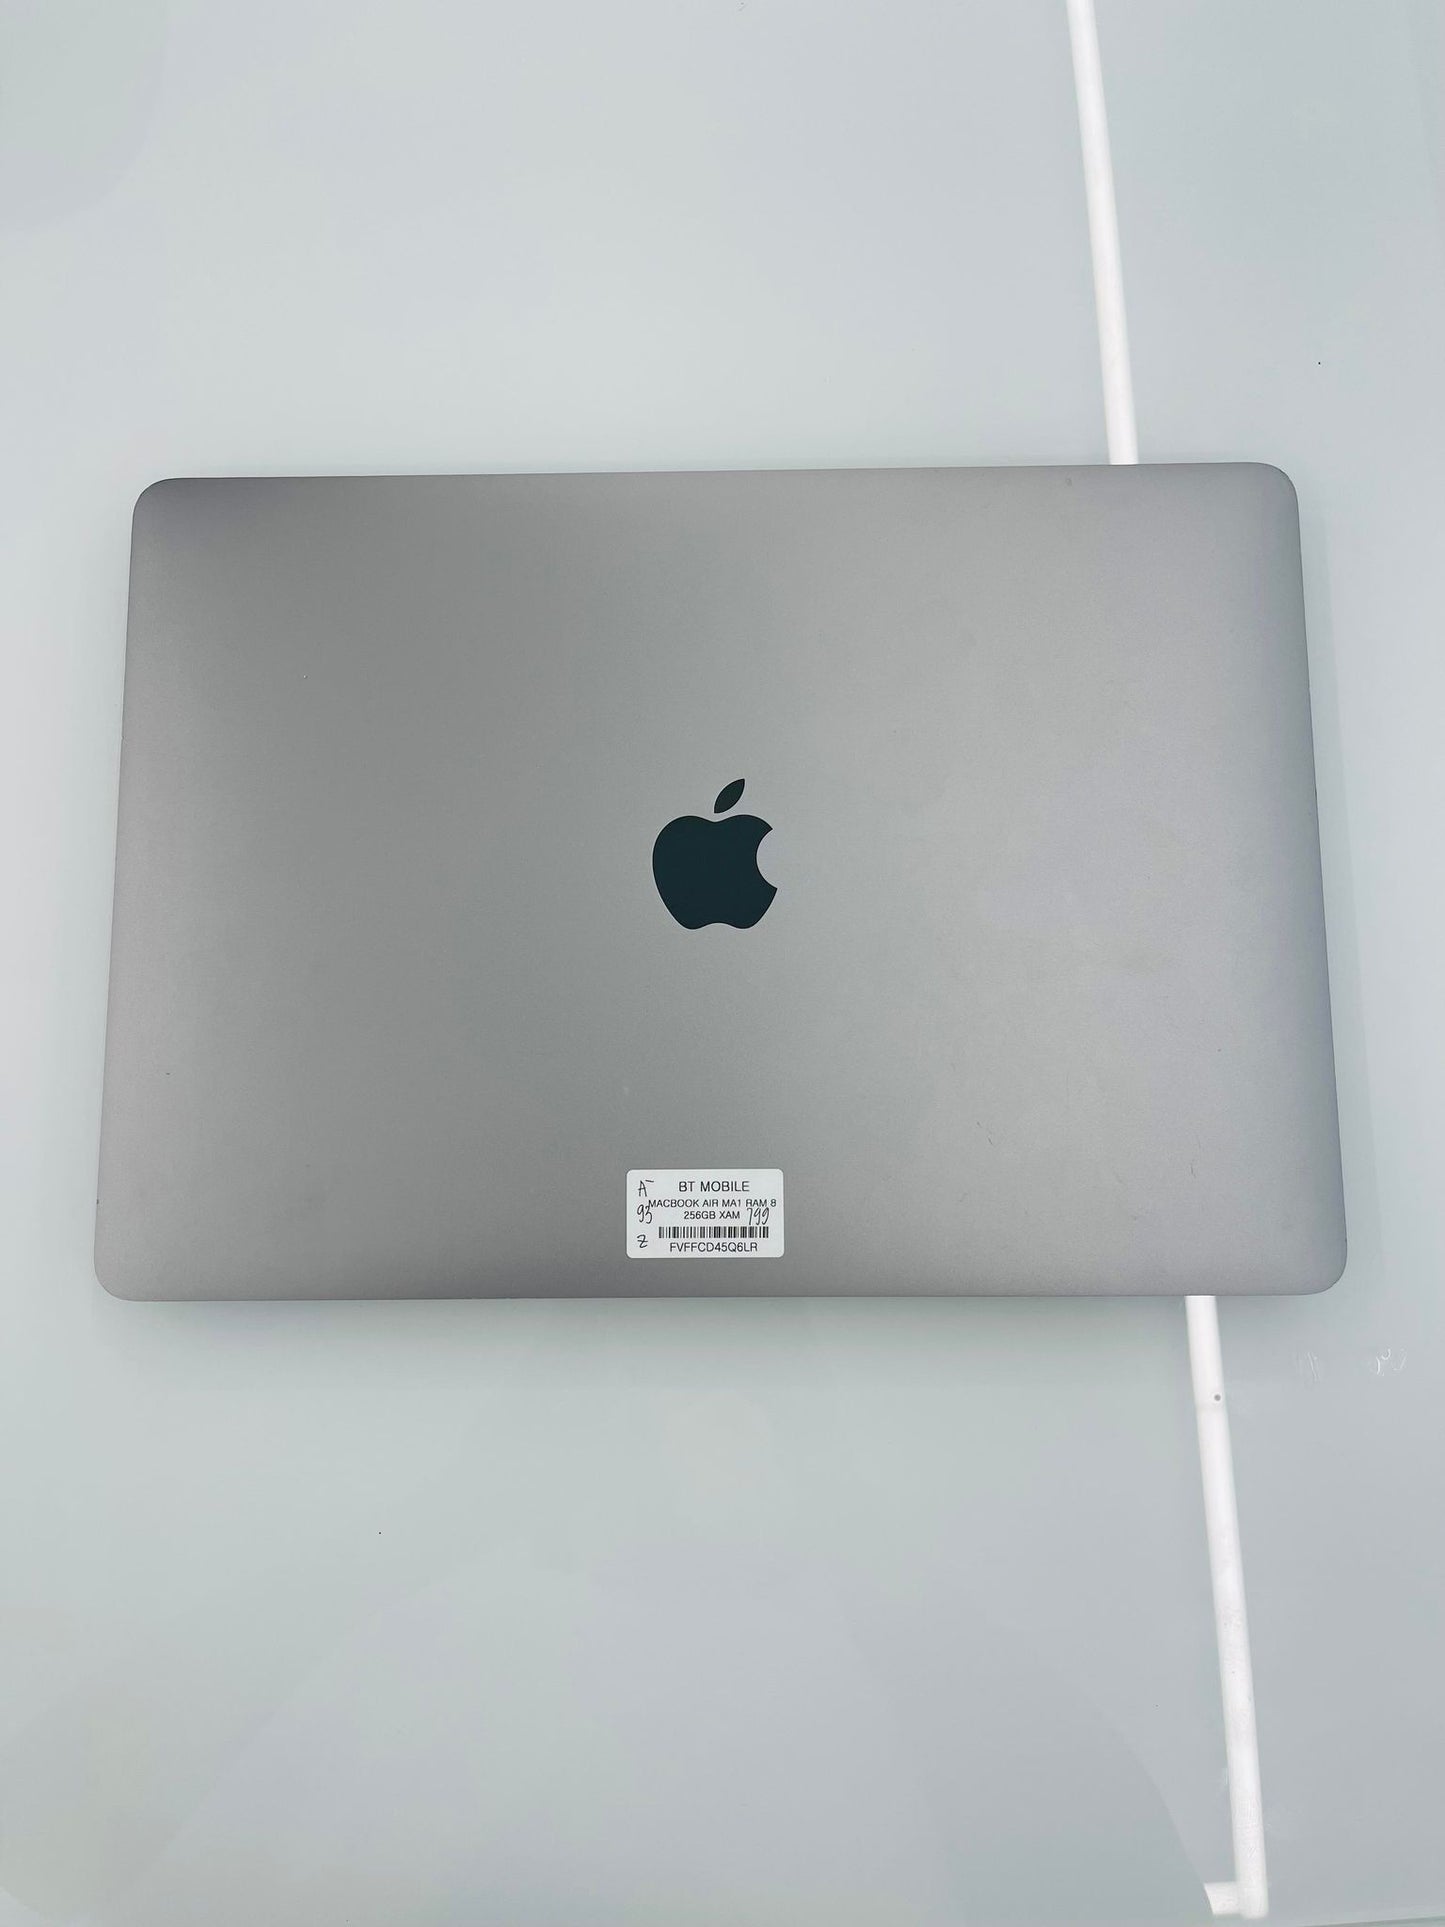 MacBook Air M1 8gb/256gb Màu xám, Pin zin 93%, Máy xước nhẹ, chưa qua thay sửa